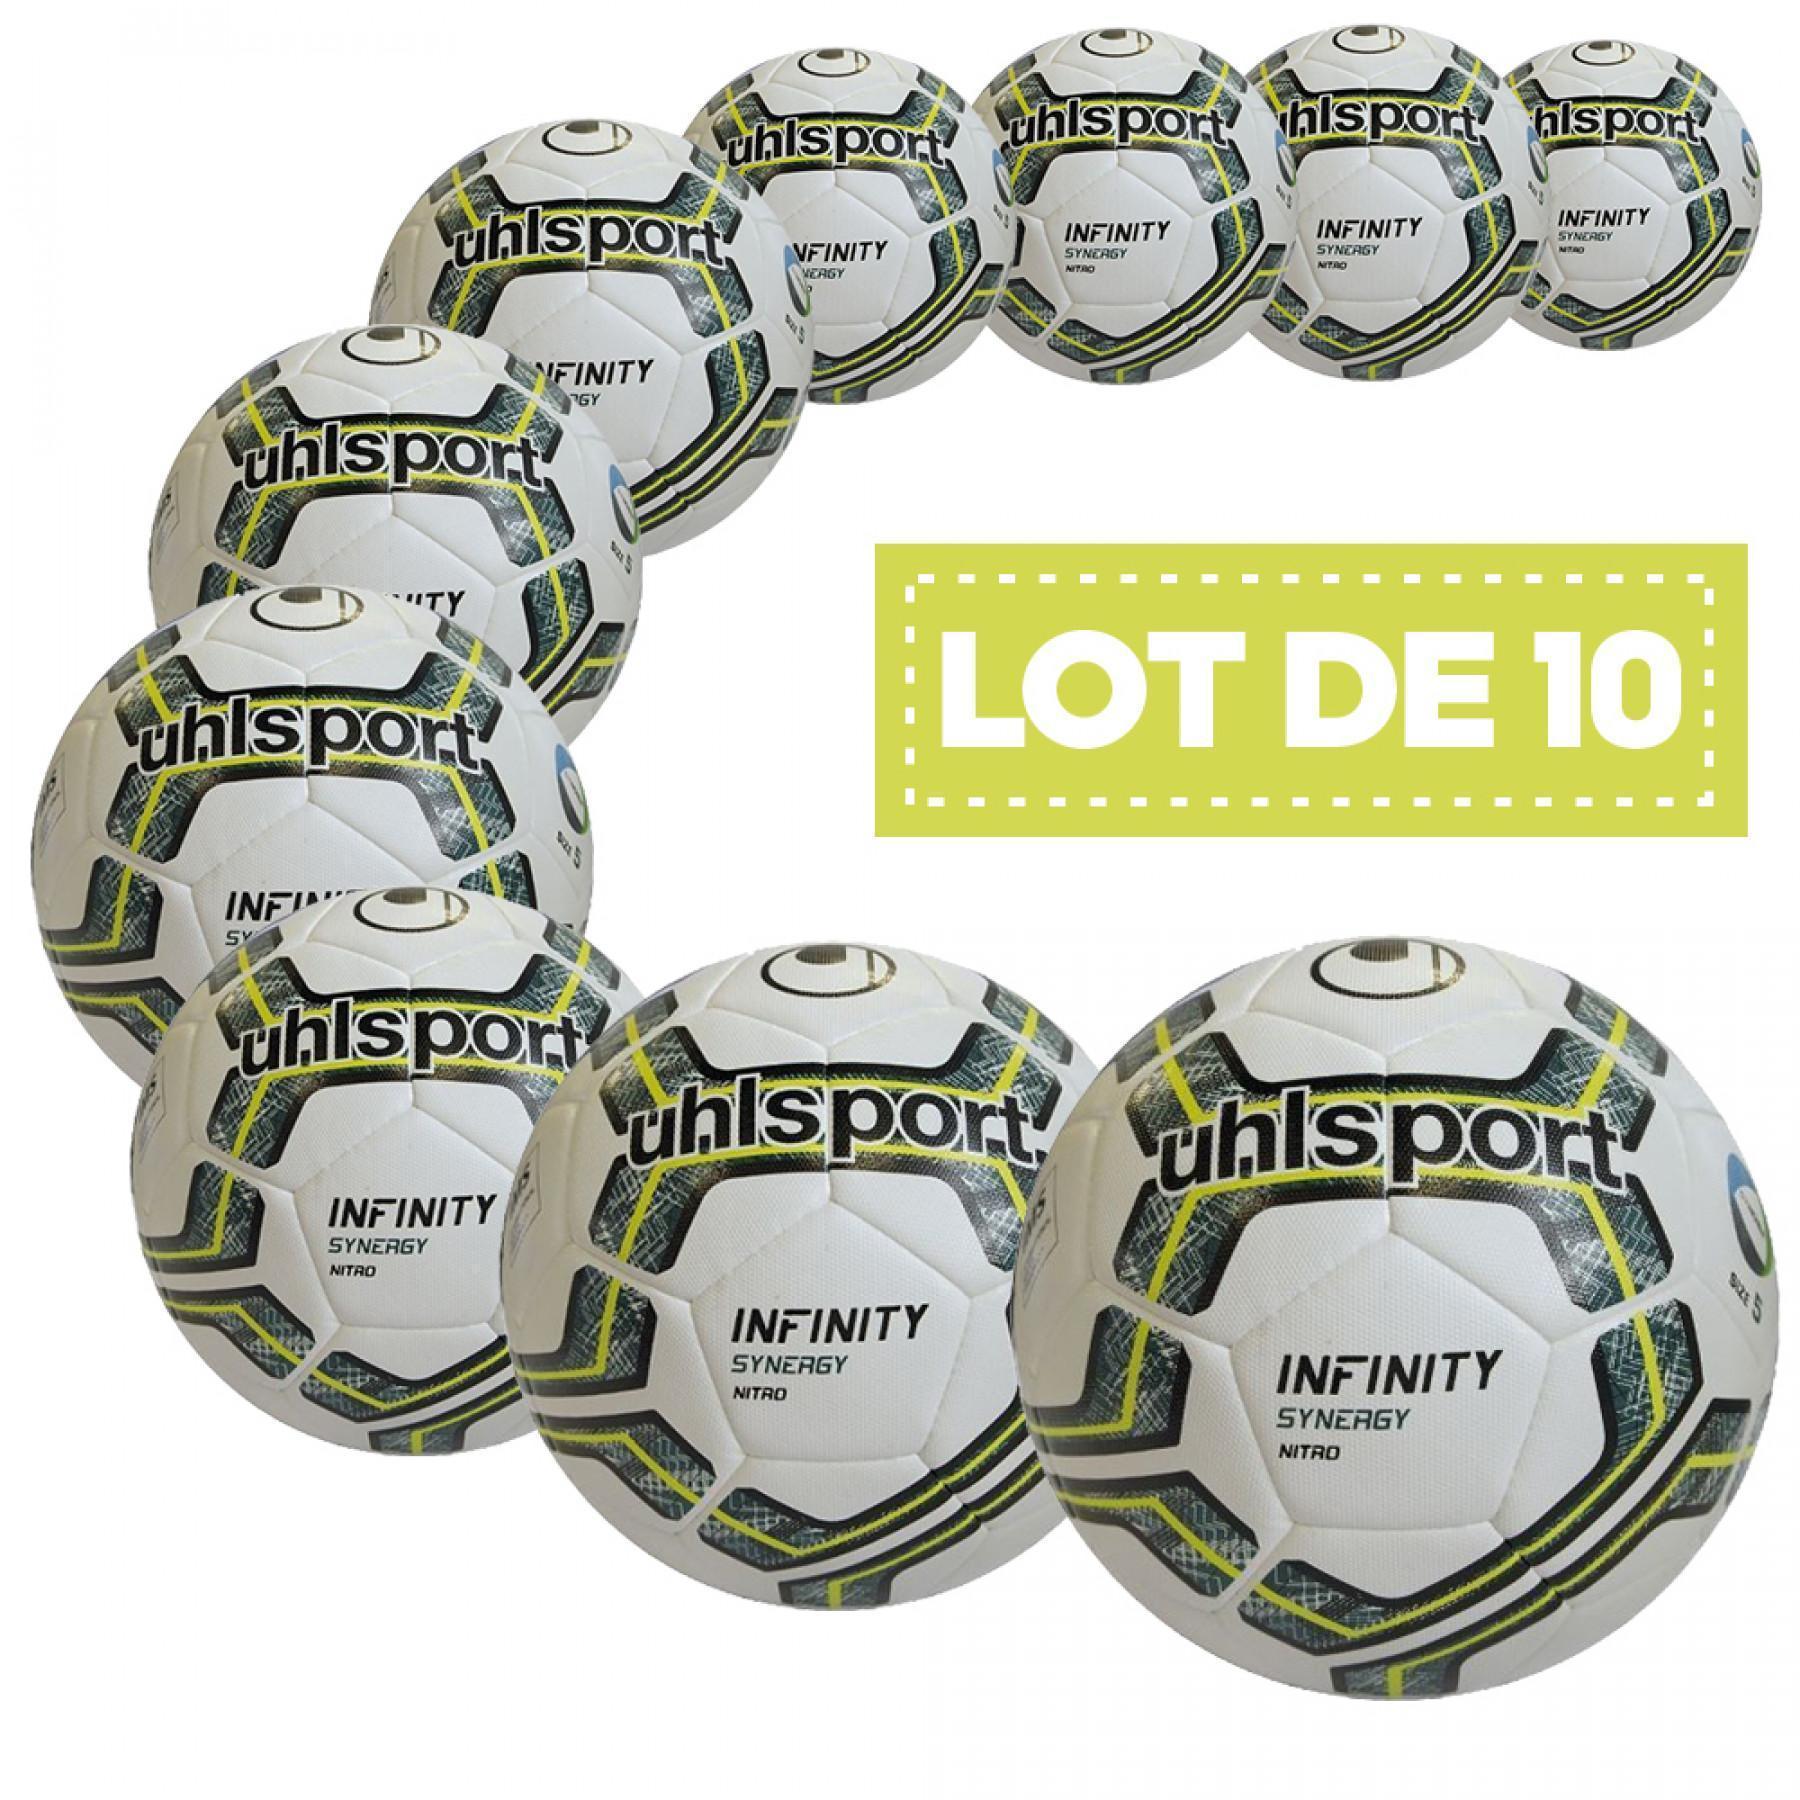 Confezione da 10 palloncini Uhlsport Infinity synergy Nitro 2.0